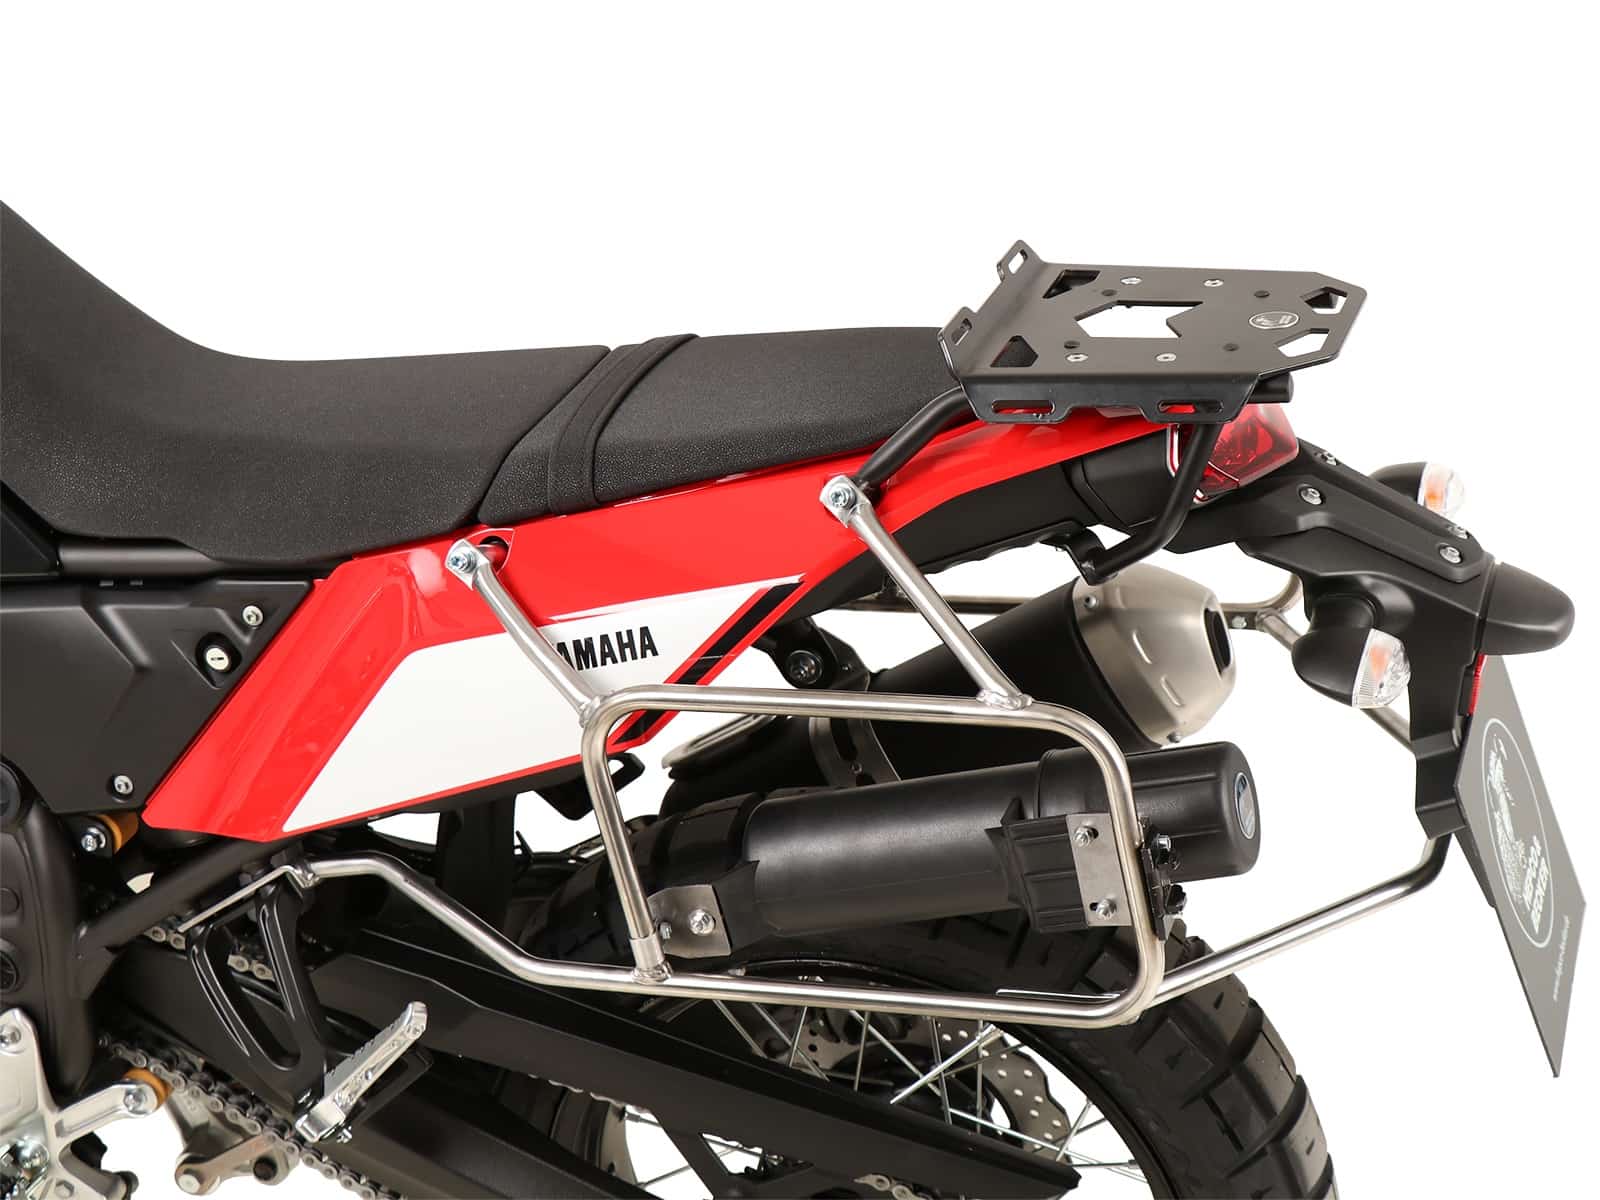 Minirack soft luggage rear rack for Yamaha Ténéré 700 / Rally (2019-)